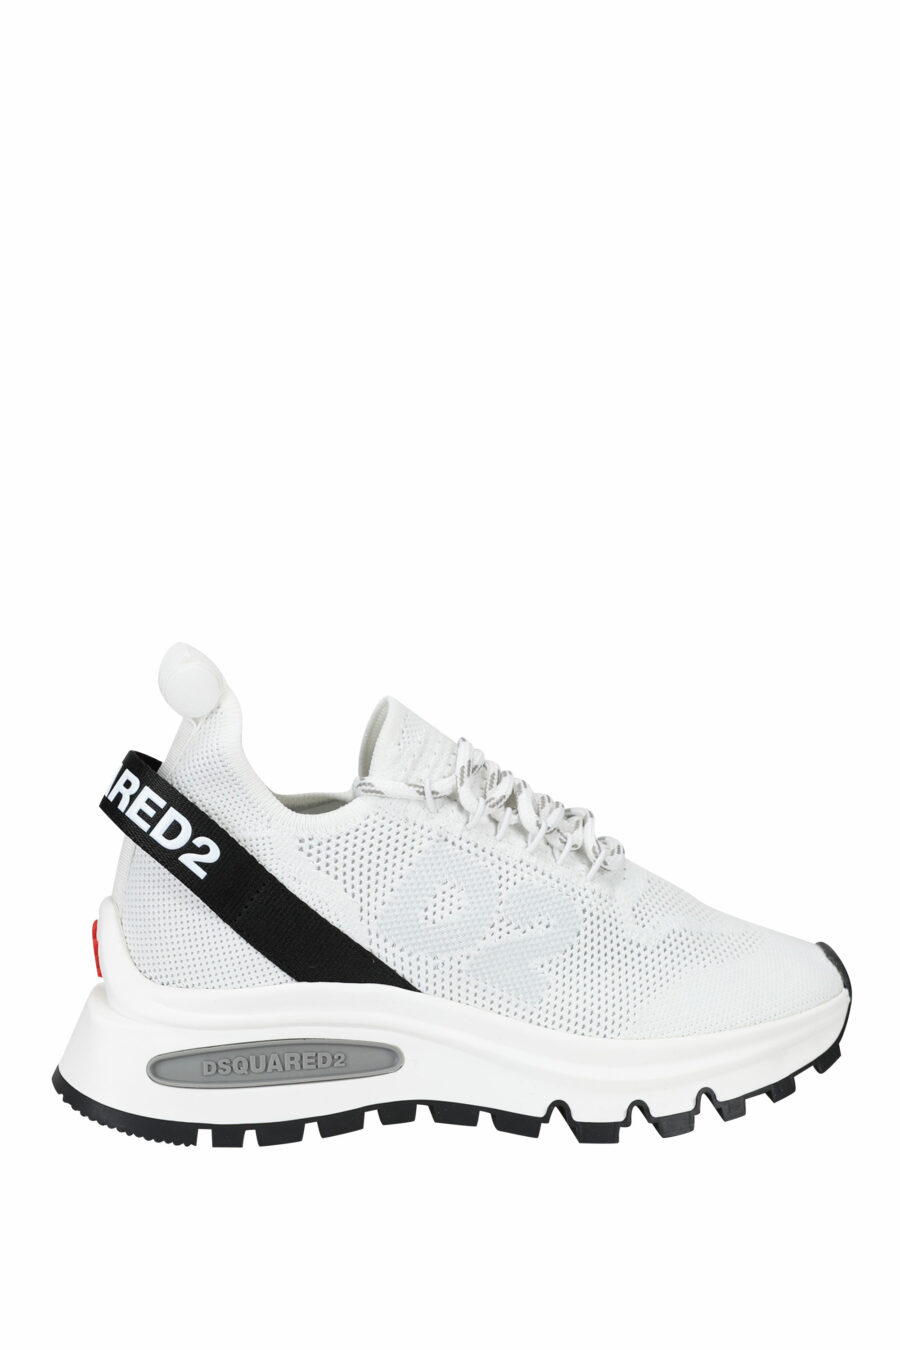 Zapatillas blancas con logo en negro y suela con cámara de aire - 8055777249857